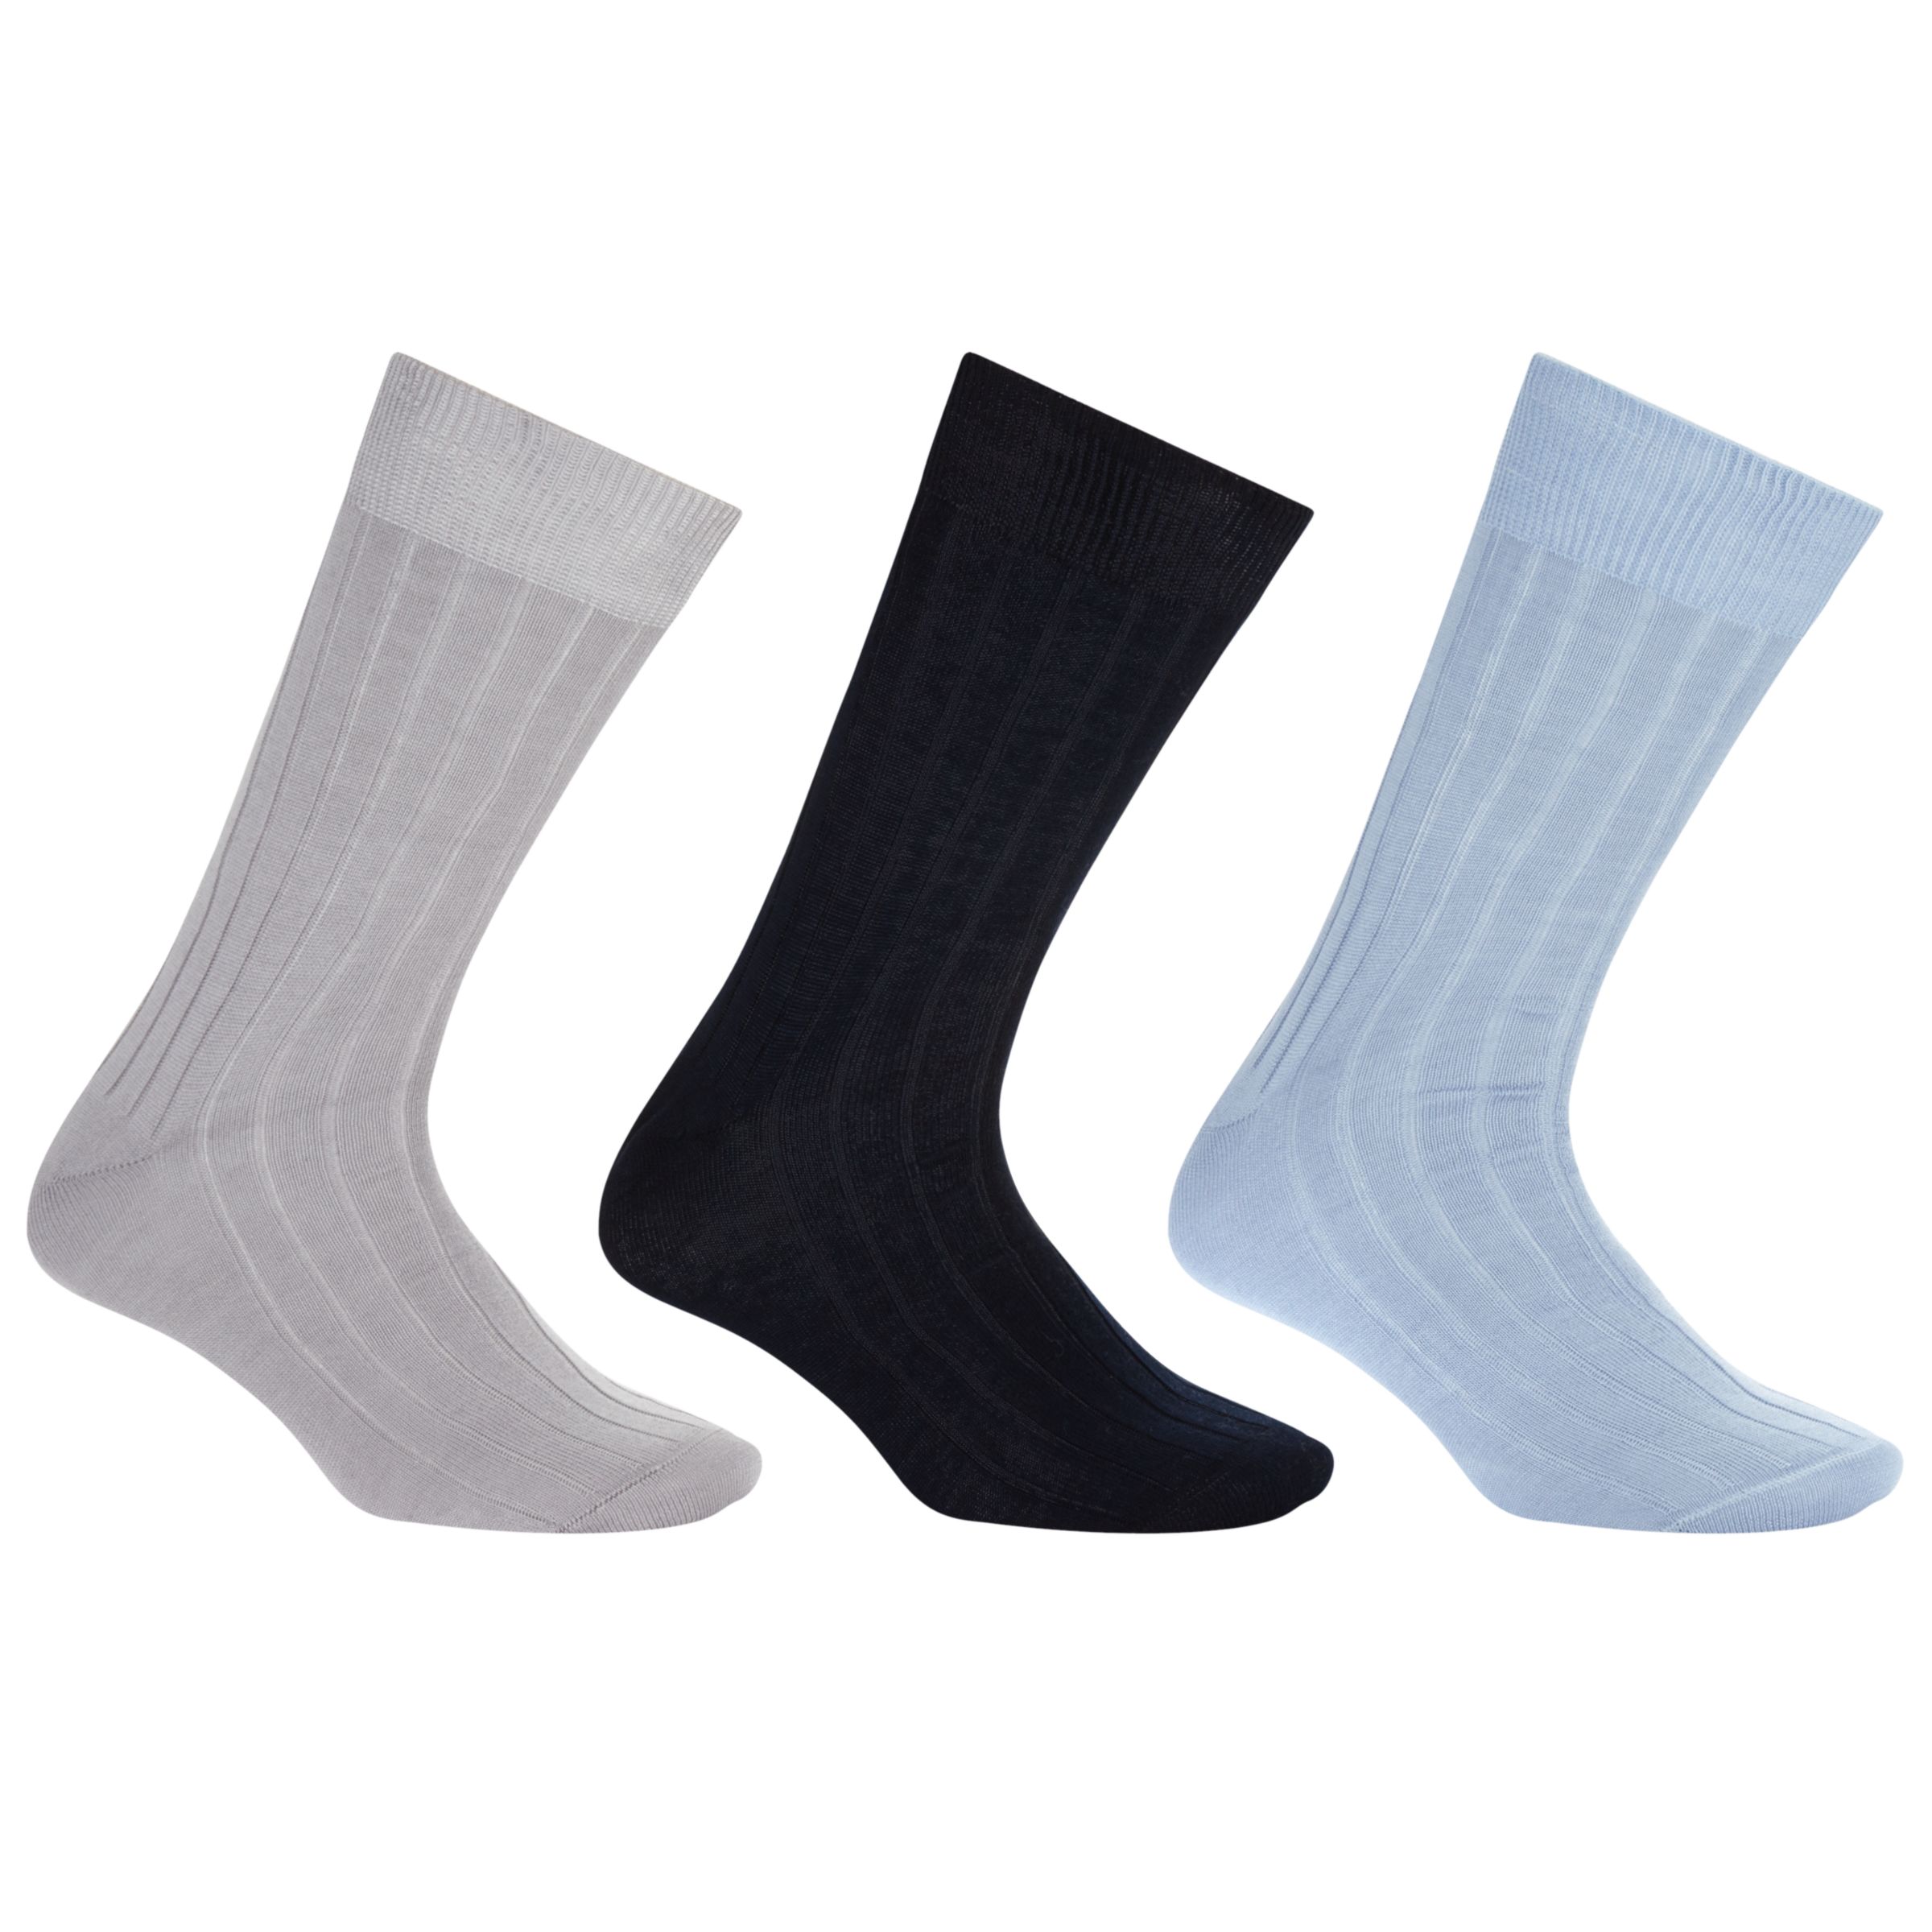 John Lewis & Partners Pure Mercerised Cotton Socks, Pack of 3, Multi, S